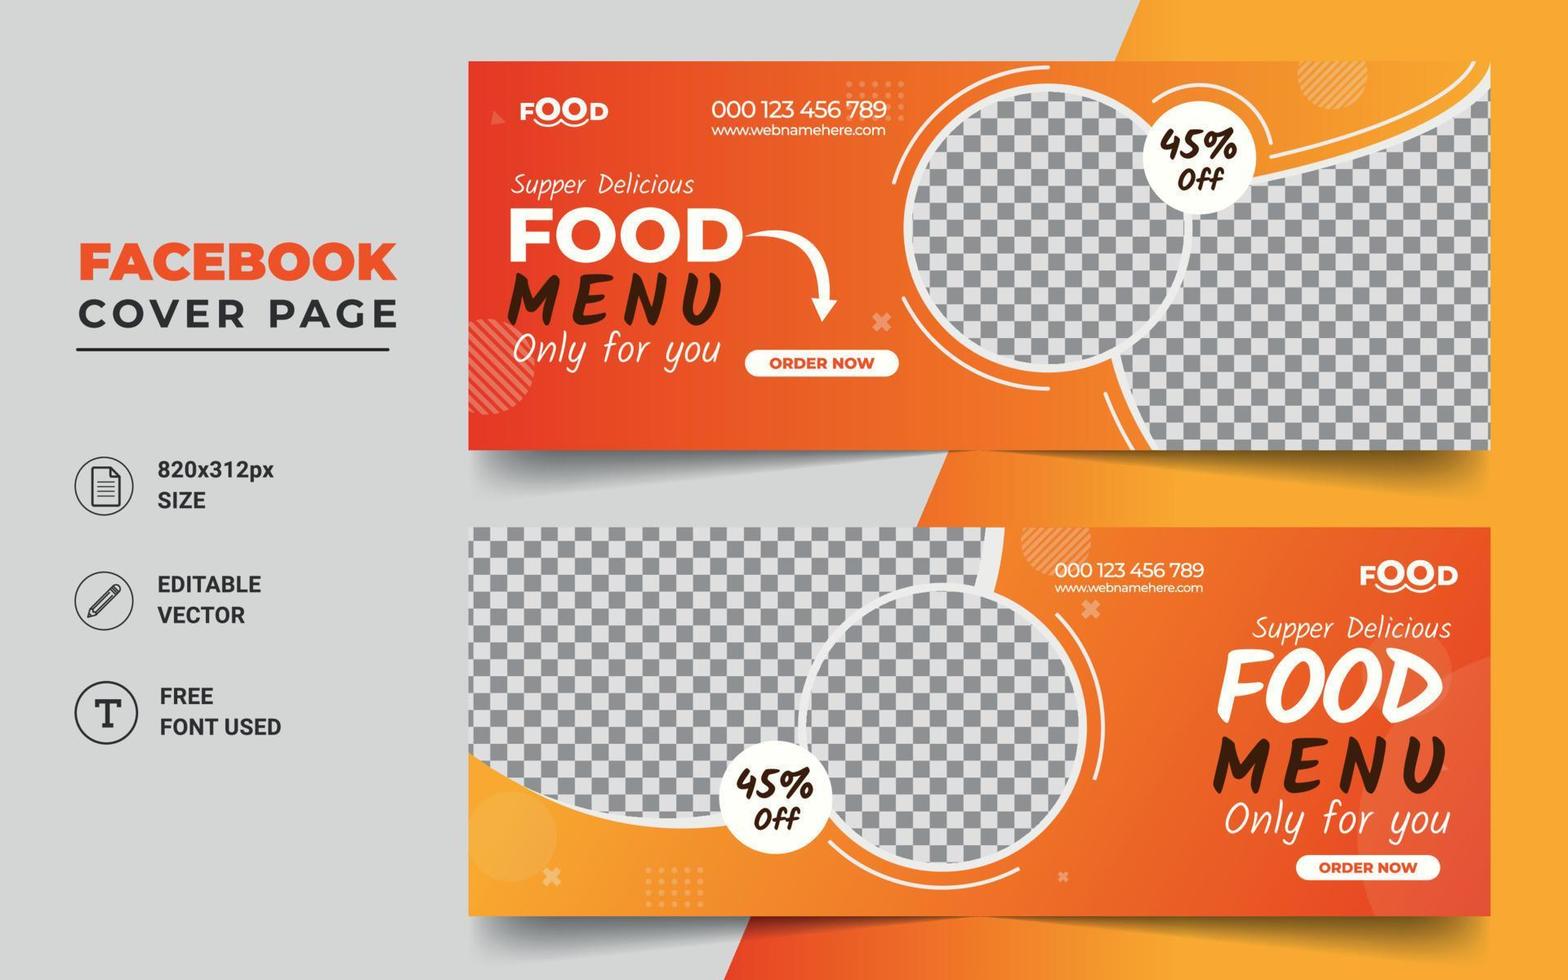 Restaurant food sale offer social media cover page timeline web ad banner template design vector